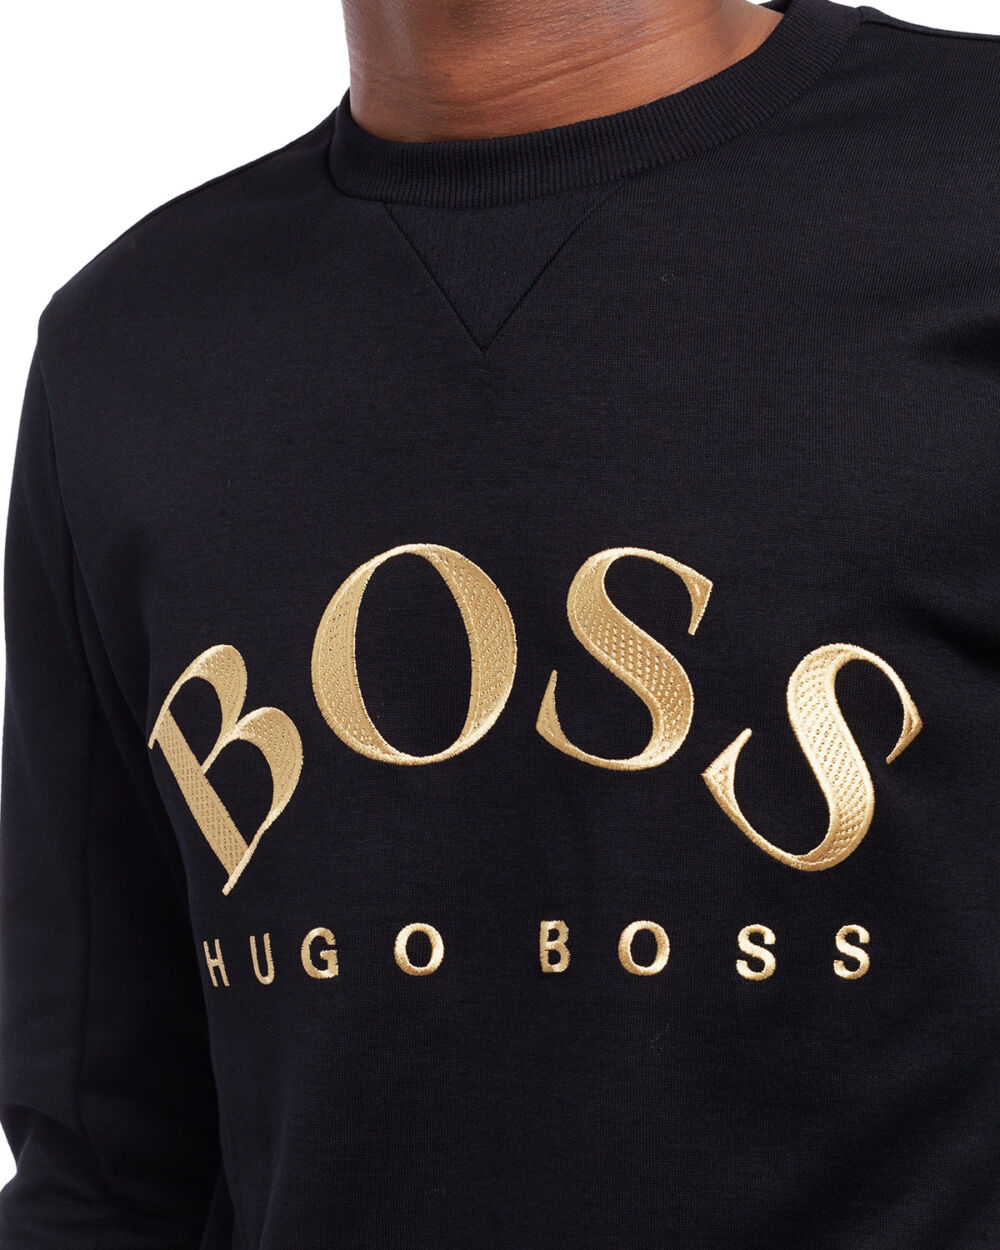 أعرف ليوناردودا الازدواجية hugo boss hoodie black gold - sjvbca.org